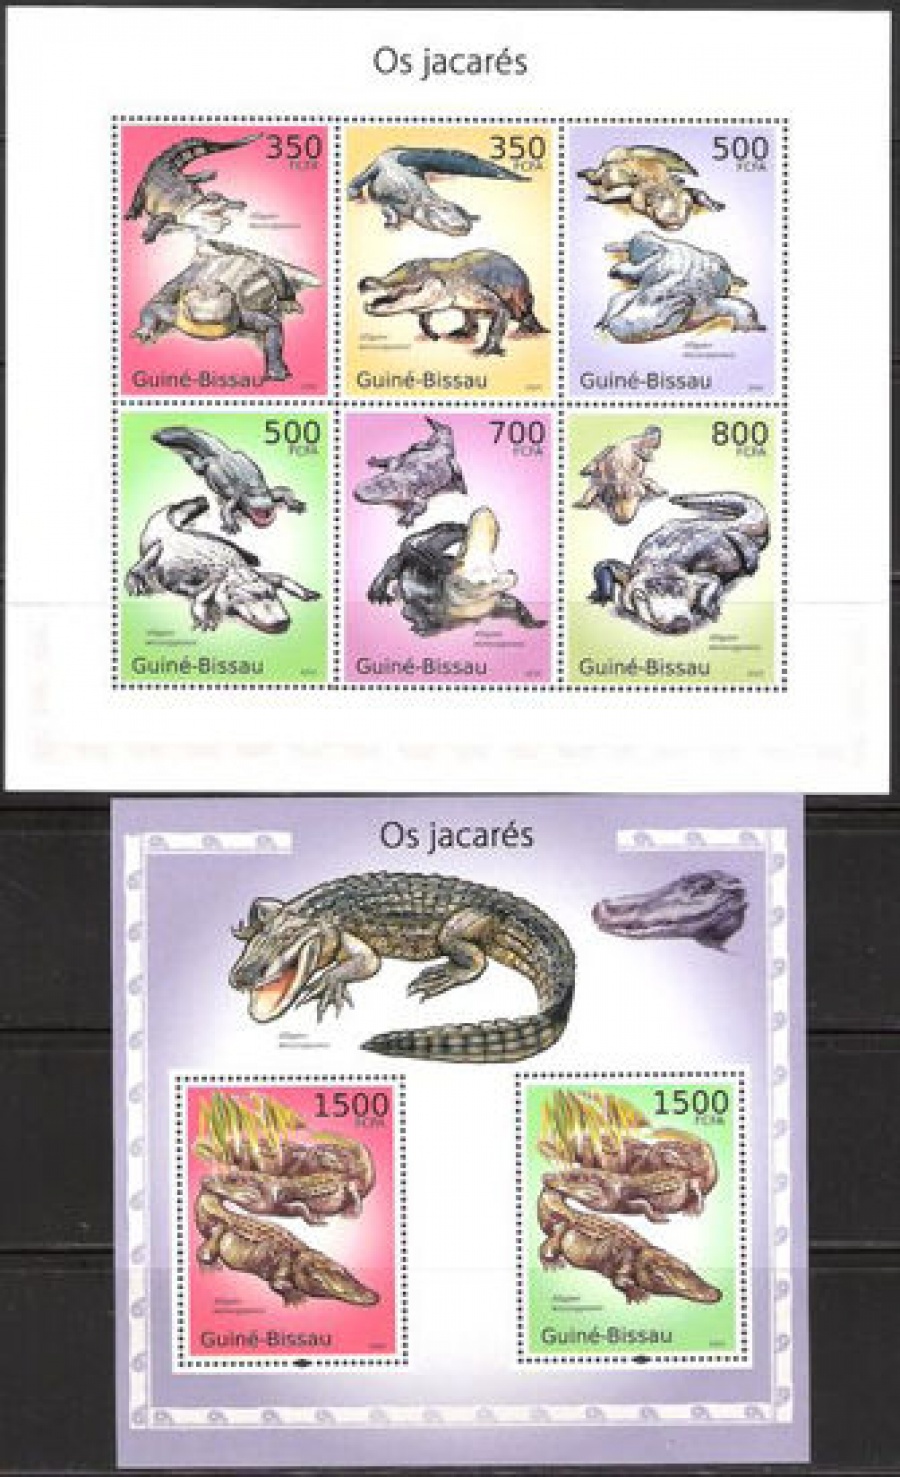 Почтовая марка НК. Гвинея-Бисау. Михель № 5001-5006 и ПБ № 864